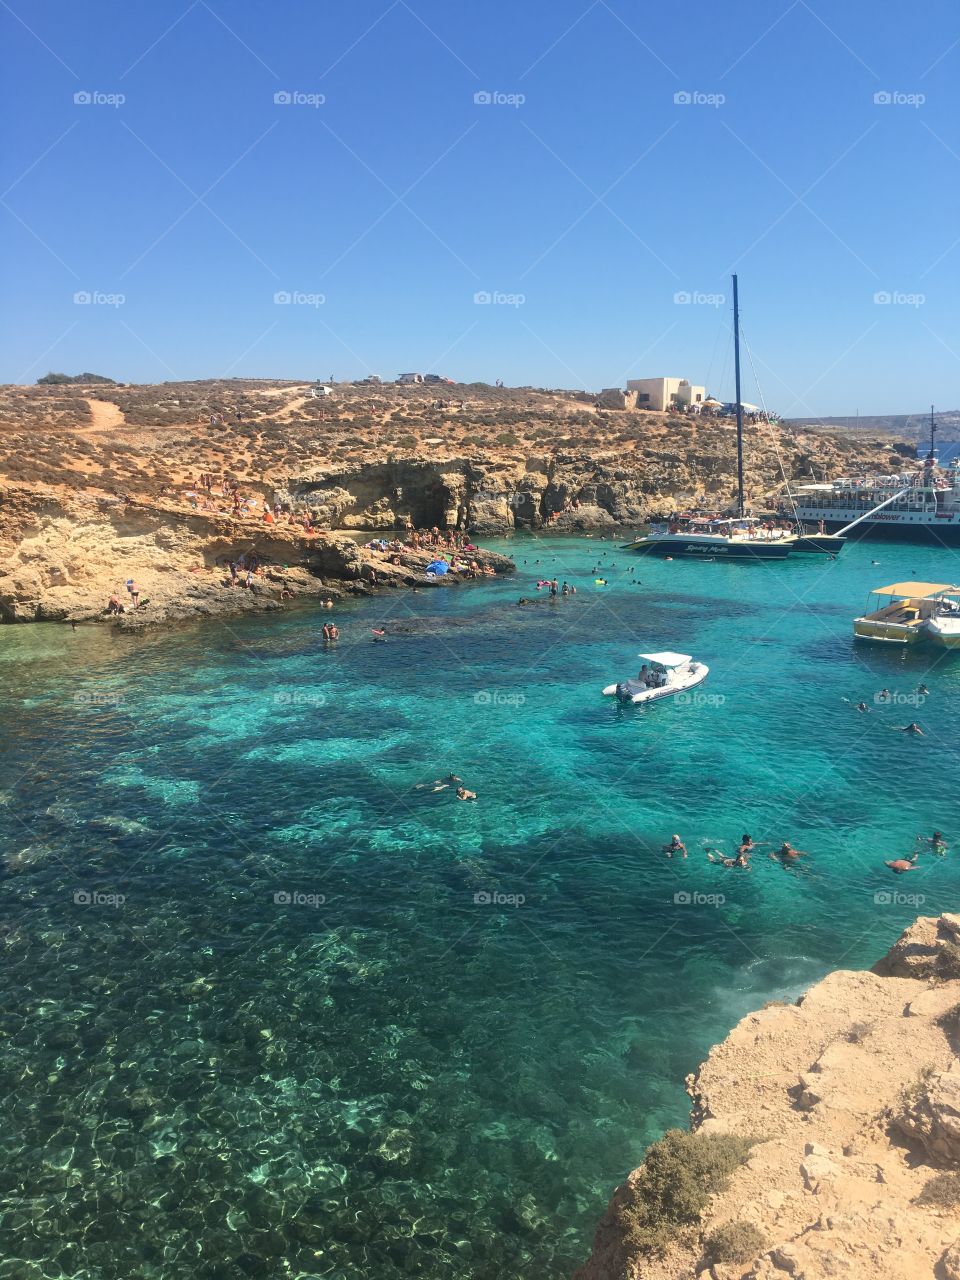 Blue lagoon, Malta.